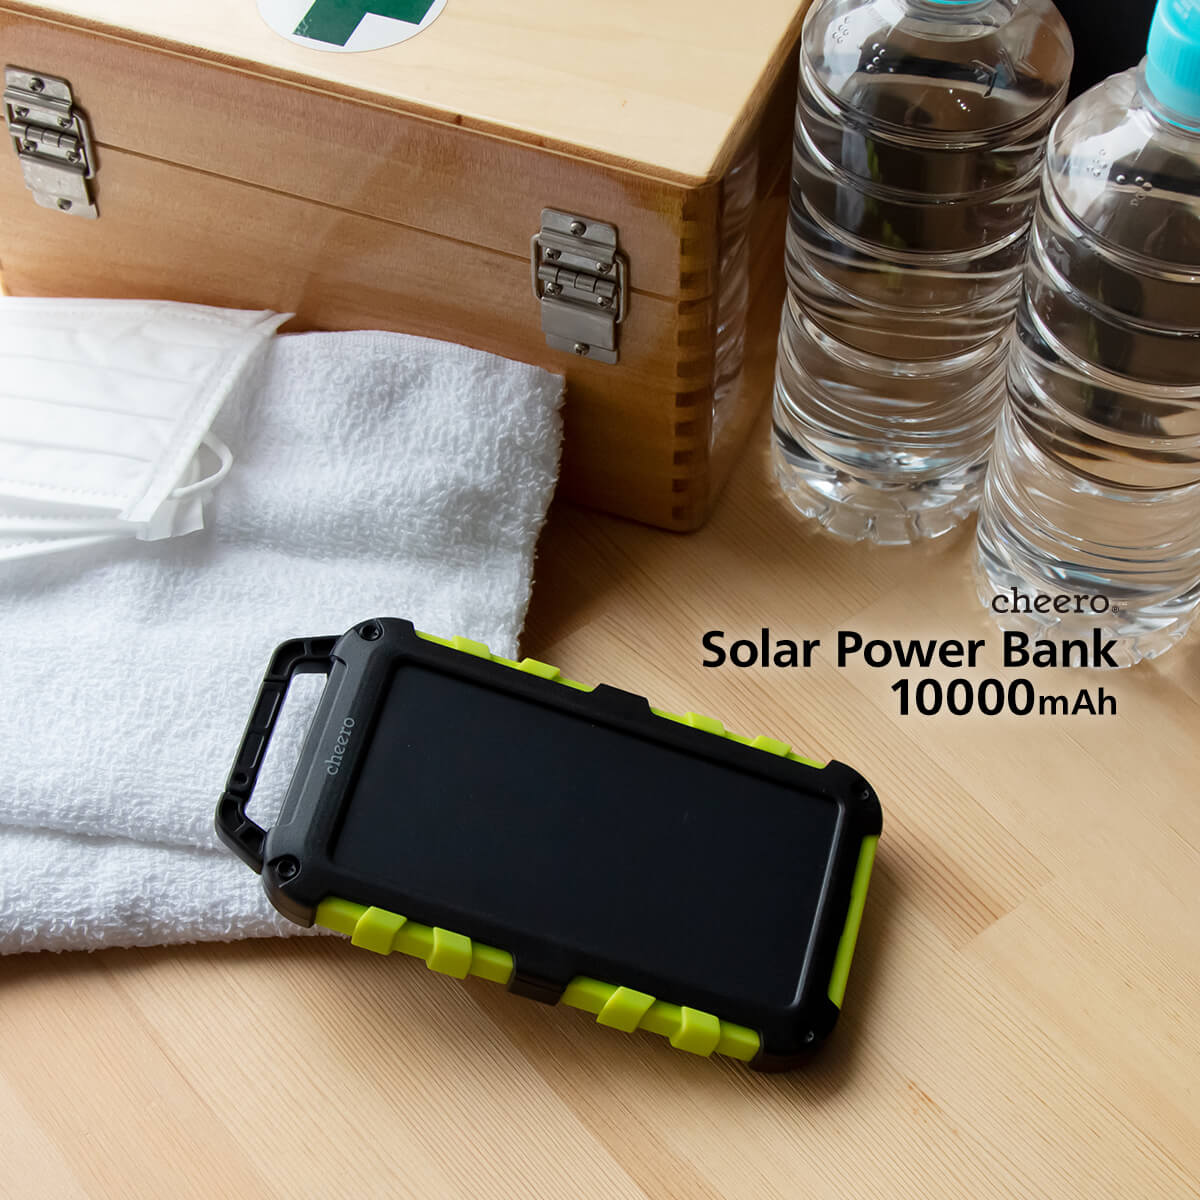 【販売終了】cheero Solar Power Bank 10000mAh